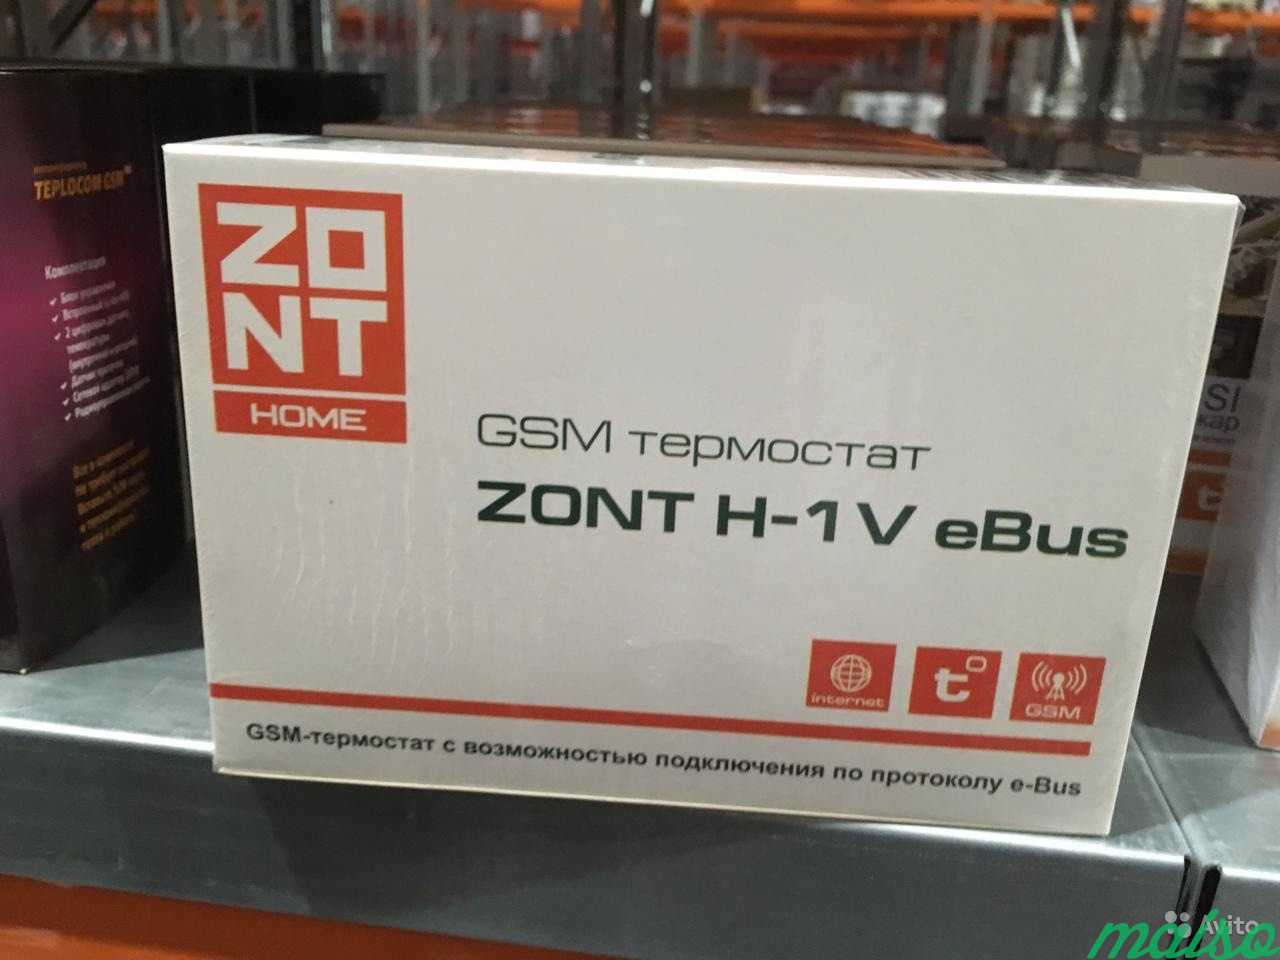 Zont 1v 02. Zont-h1v EBUS GSM-термостат. GSM термостат Zont h-1v e-Bus. GSM-термостат Zont h-1v EBUS для котлов Vaillant. ЖСМ термостат зонт h-1v.